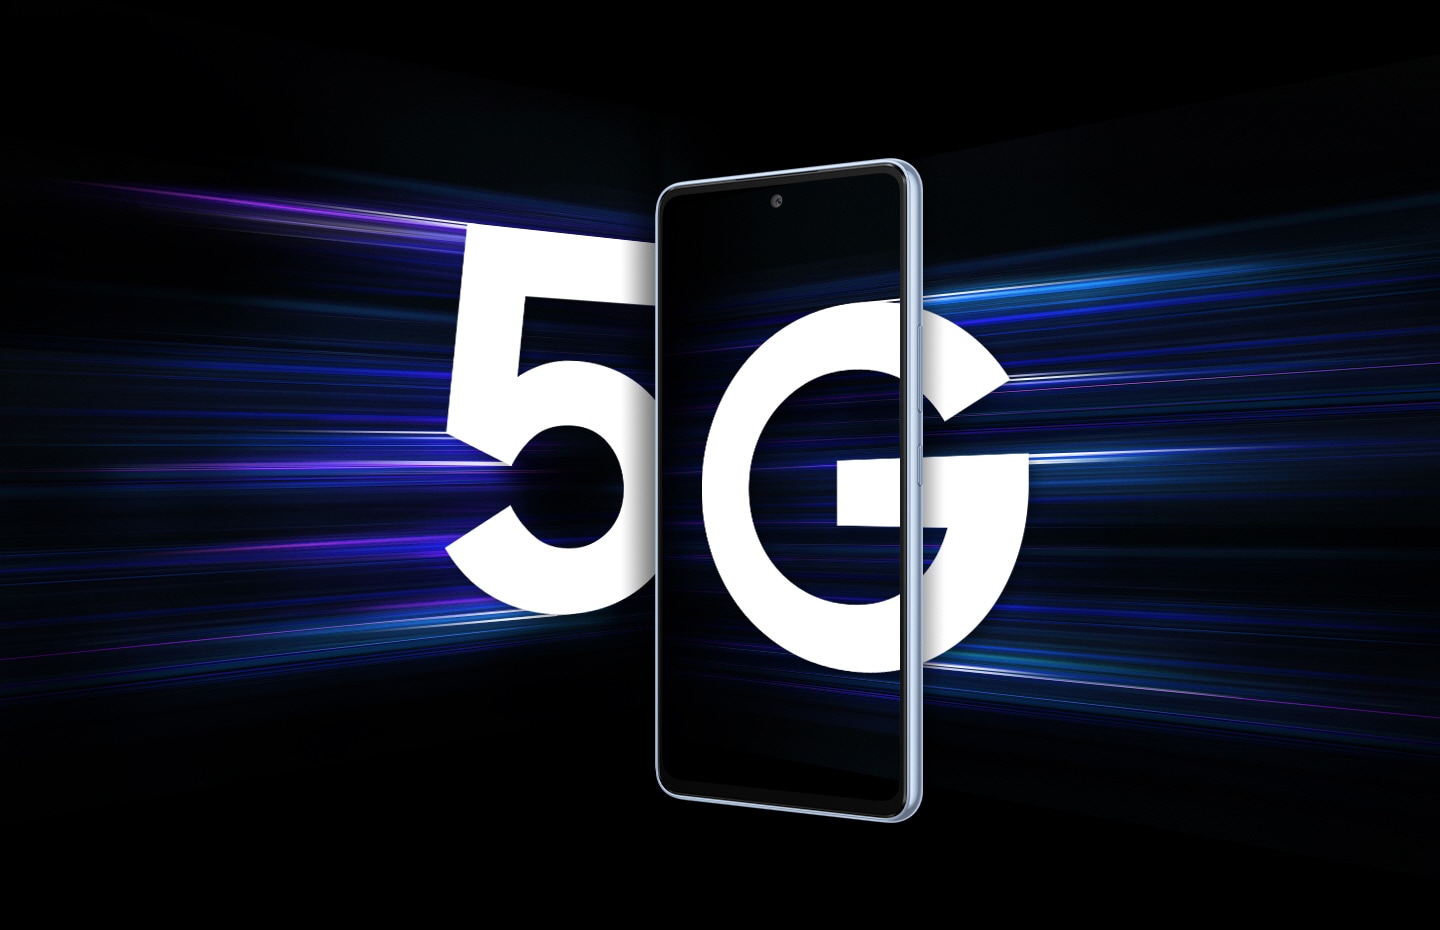 Galaxy A53 5G visto desde el frente contra un fondo negro. Desde la izquierda, un 5 grande y blanco se acerca al smartphone inteligente con vetas de luz que acentúan el número para mostrar que está entrando rápidamente. Desde la derecha, una G grande y blanca ha ingresado parcialmente a la pantalla del smartphone inteligente.